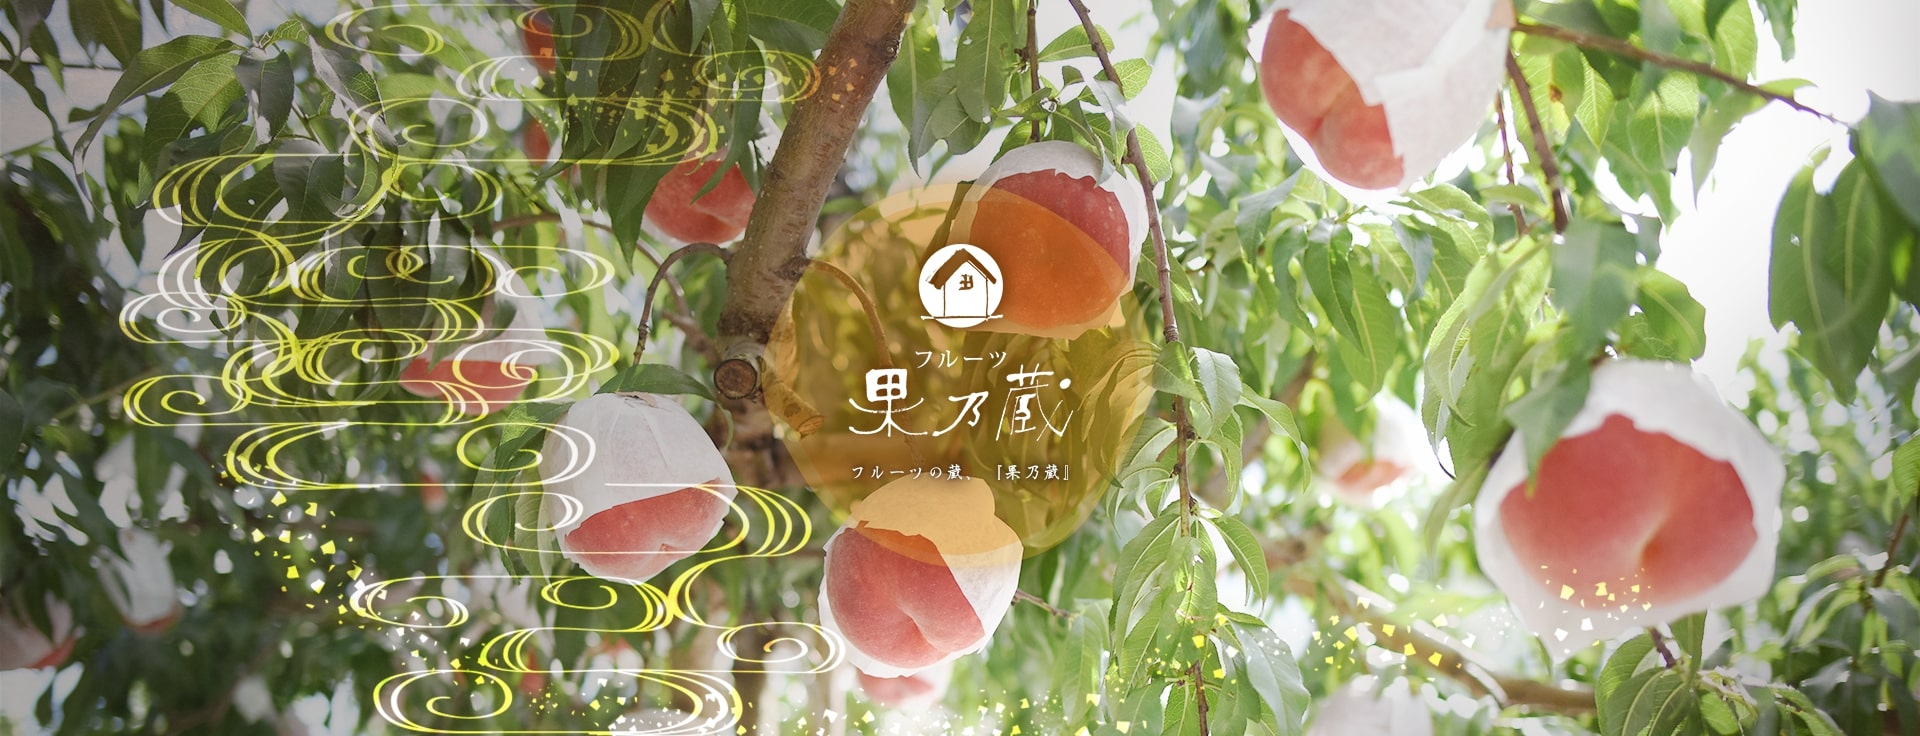 山形県天童市にある、美味しい果物を栽培・生産しているフルーツ果乃蔵の金桃の写真